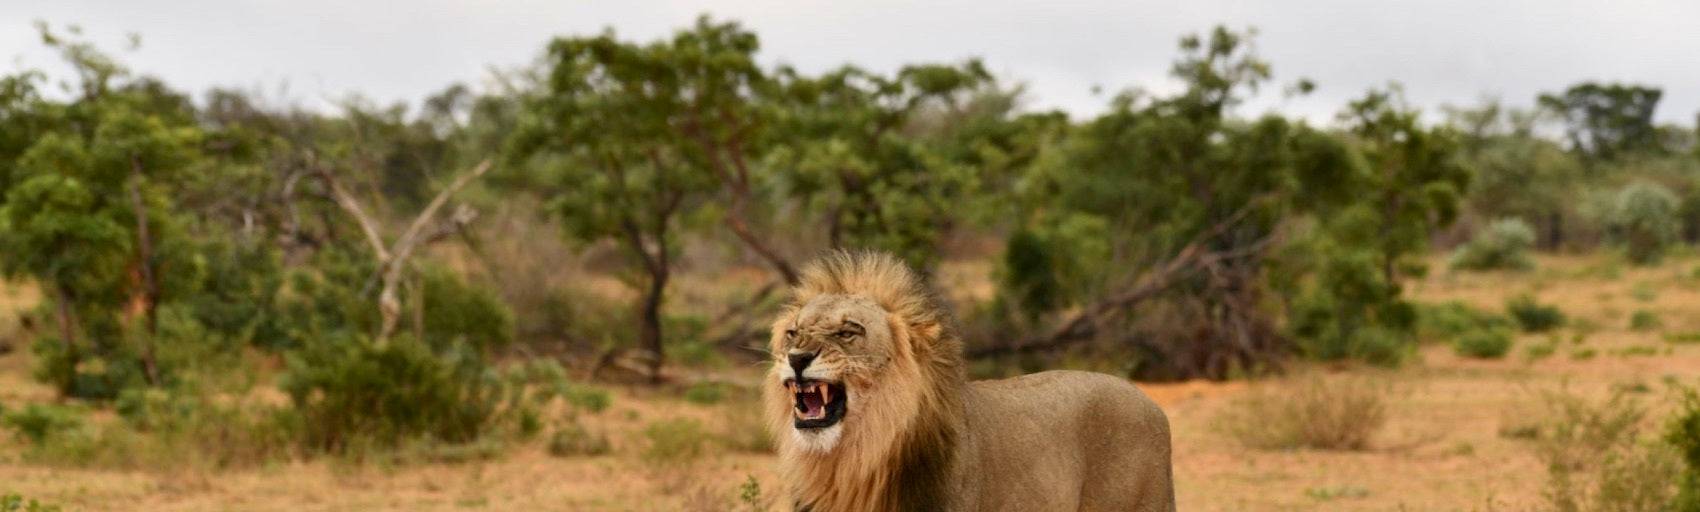 Lion Male avec Criniere tete haute dans la savane